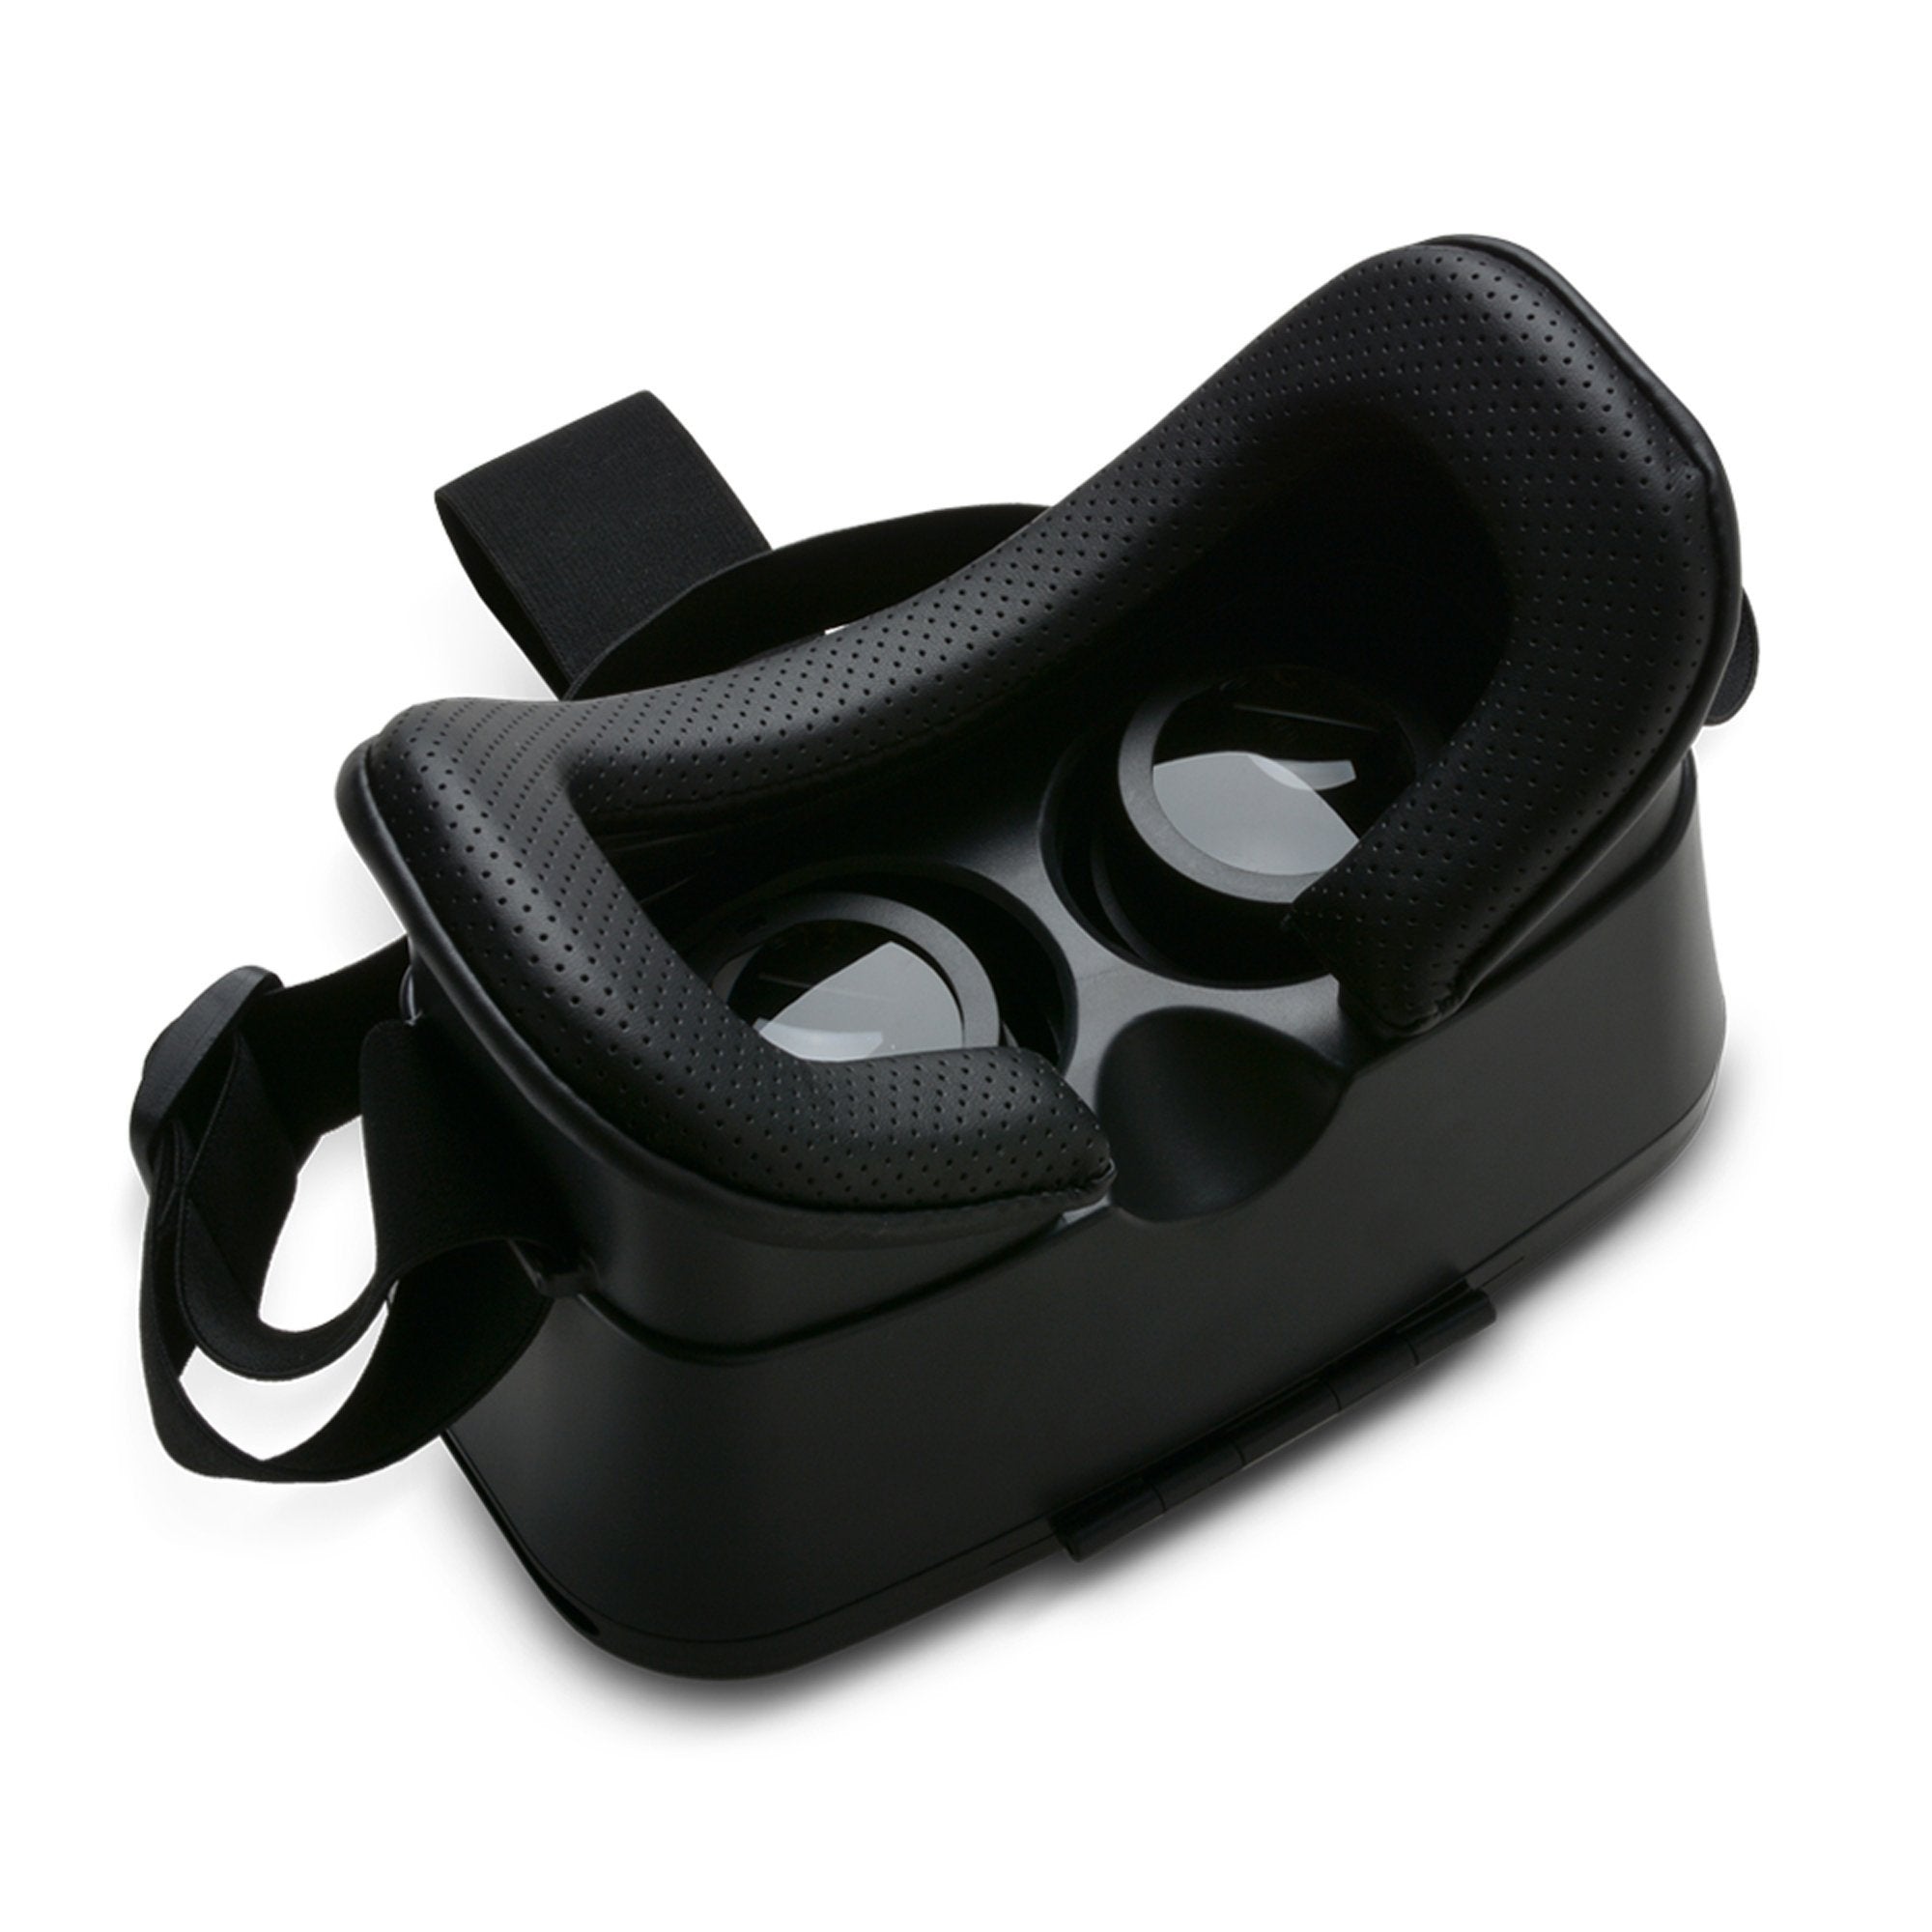 AGPtek VR Headset